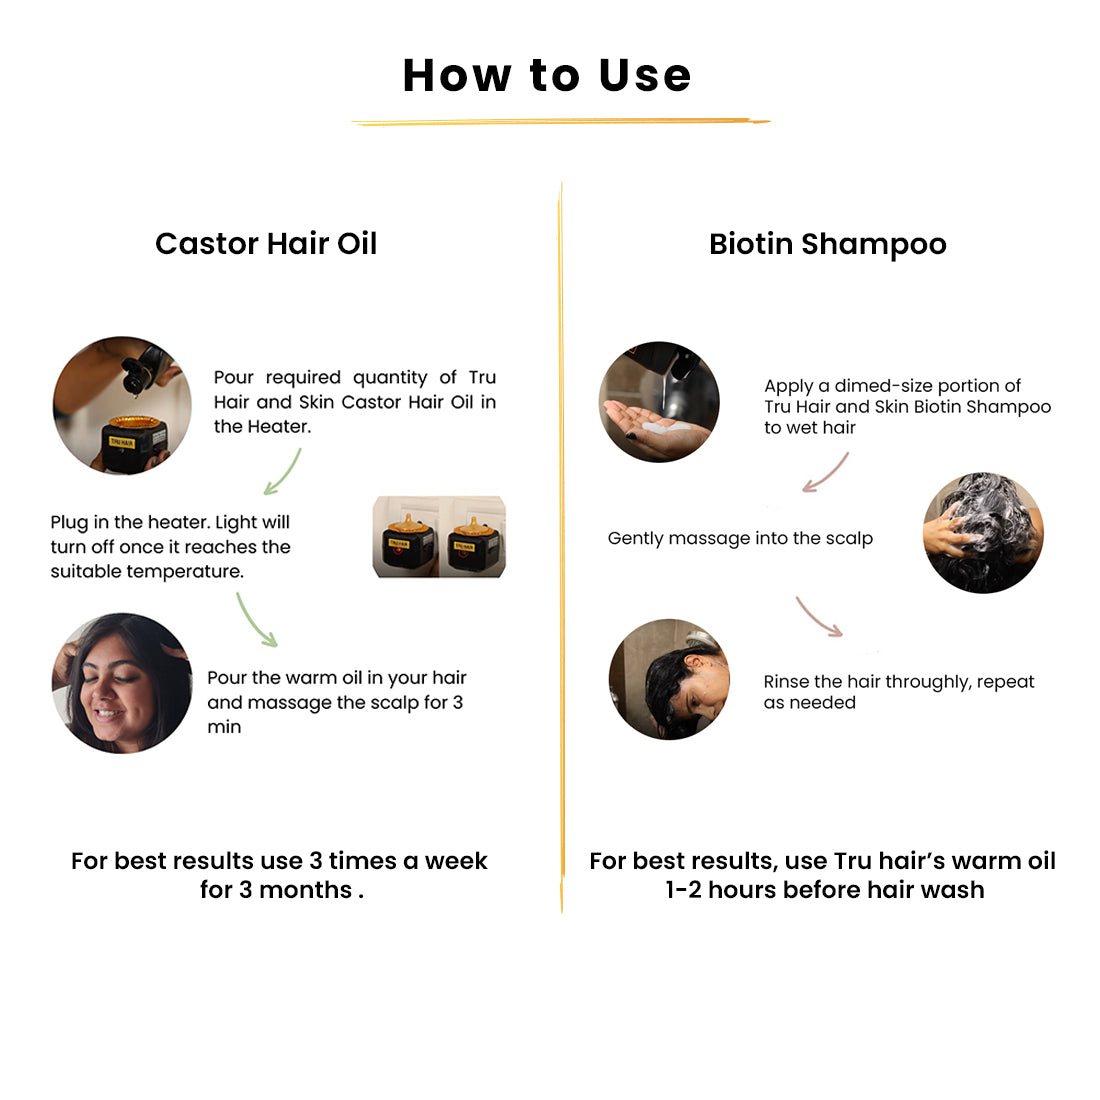 Castor Hair Oil with Heater-110ml and  Biotin Shampoo-200ml